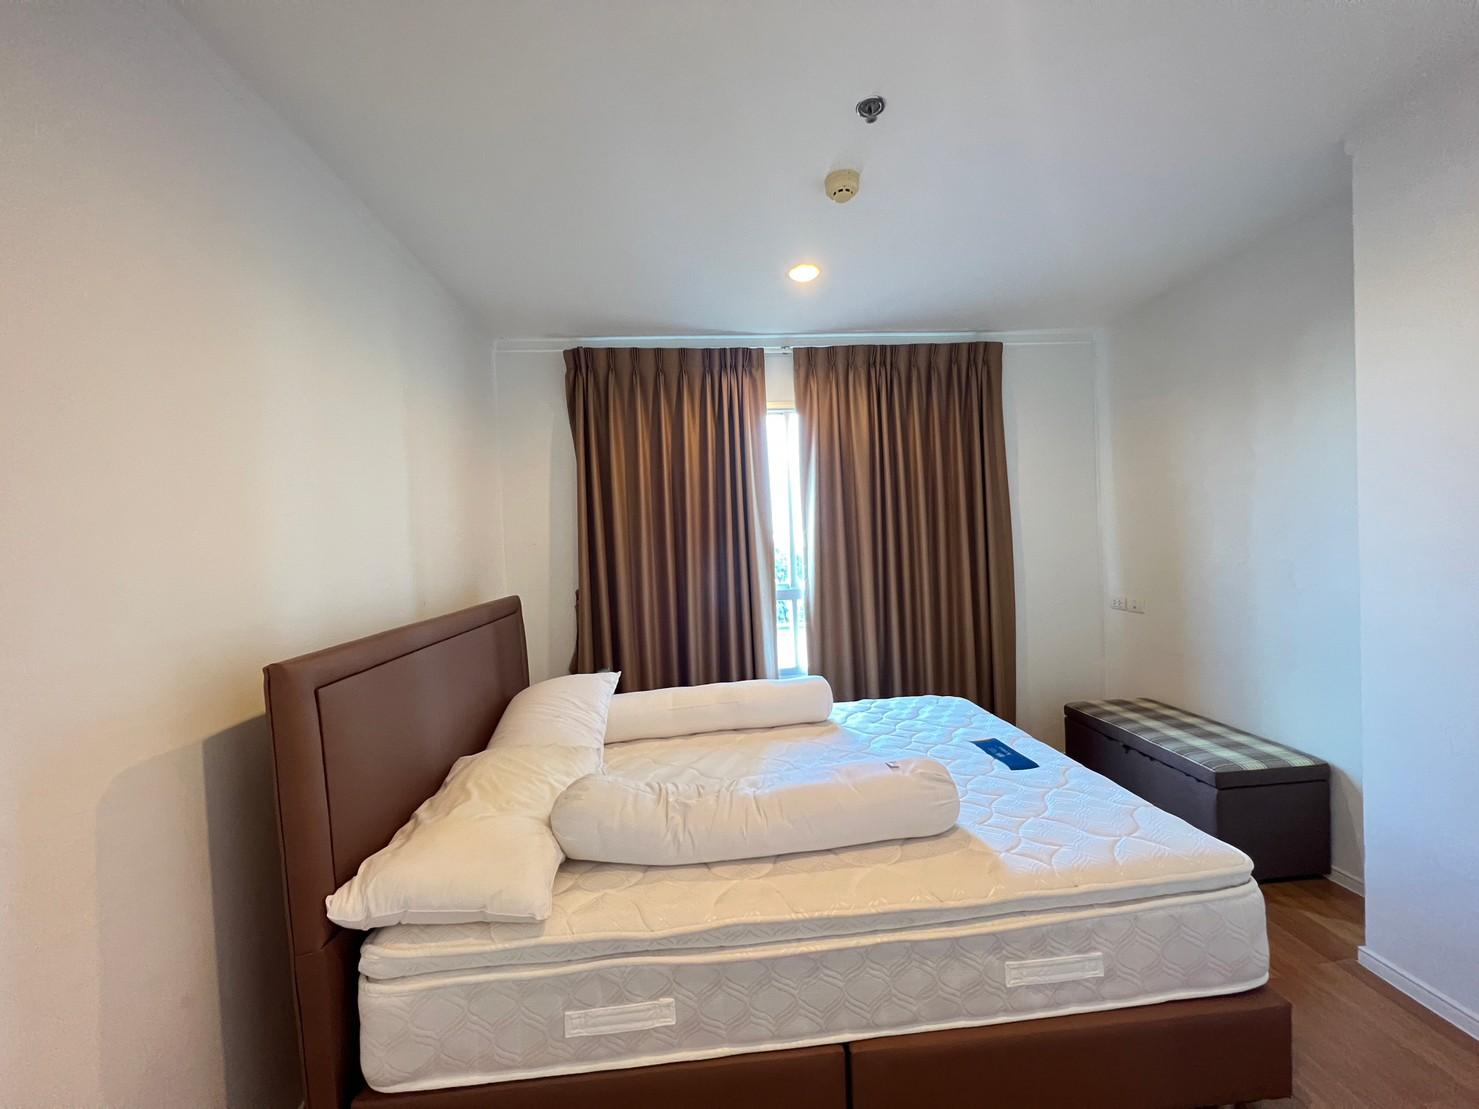 เช่าคอนโด ลุมพินี เพลส สุขสวัสดิ์ - พระราม2 คอนโดมิเนียม - Condo Rental Lumpini Place Suksawat - Rama2 condominium - 2645018